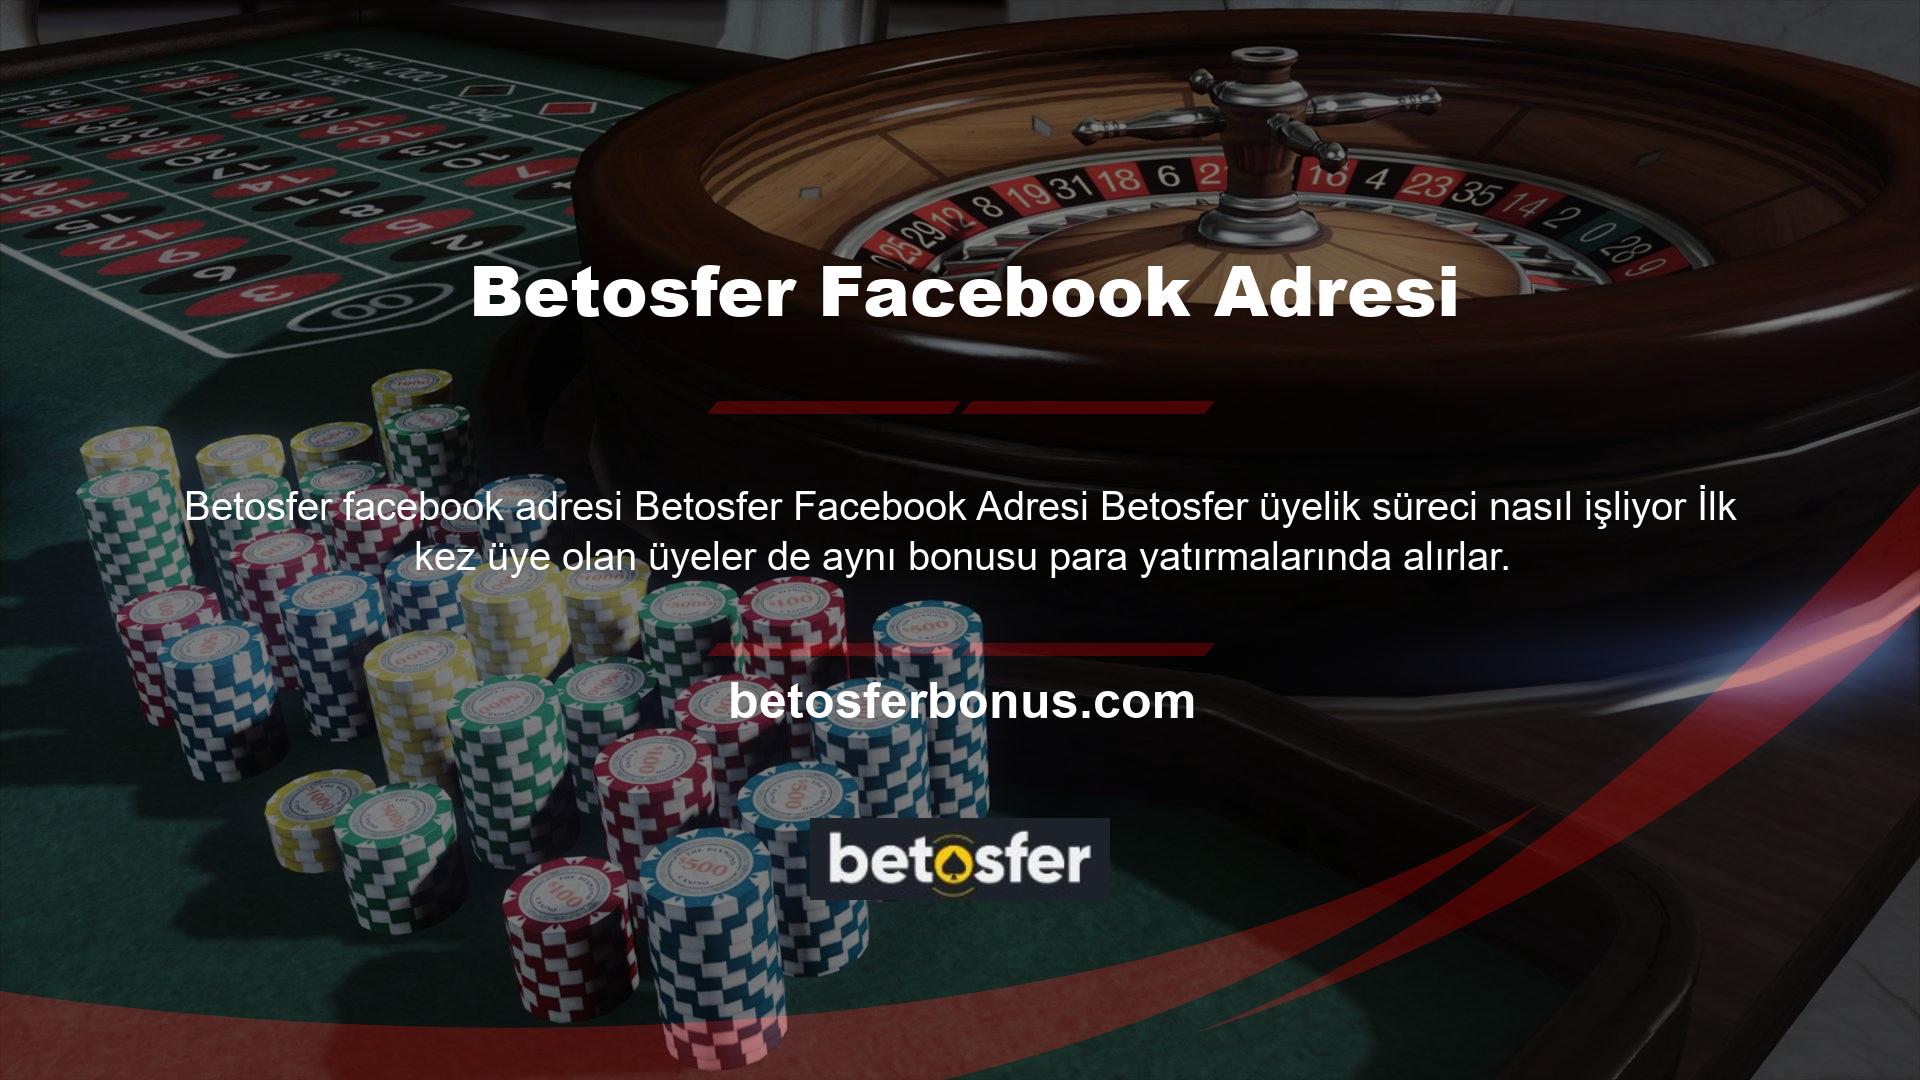 Bu Betosfer Facebook adresi Bahis ve Casino bölümünde kullanılabilir